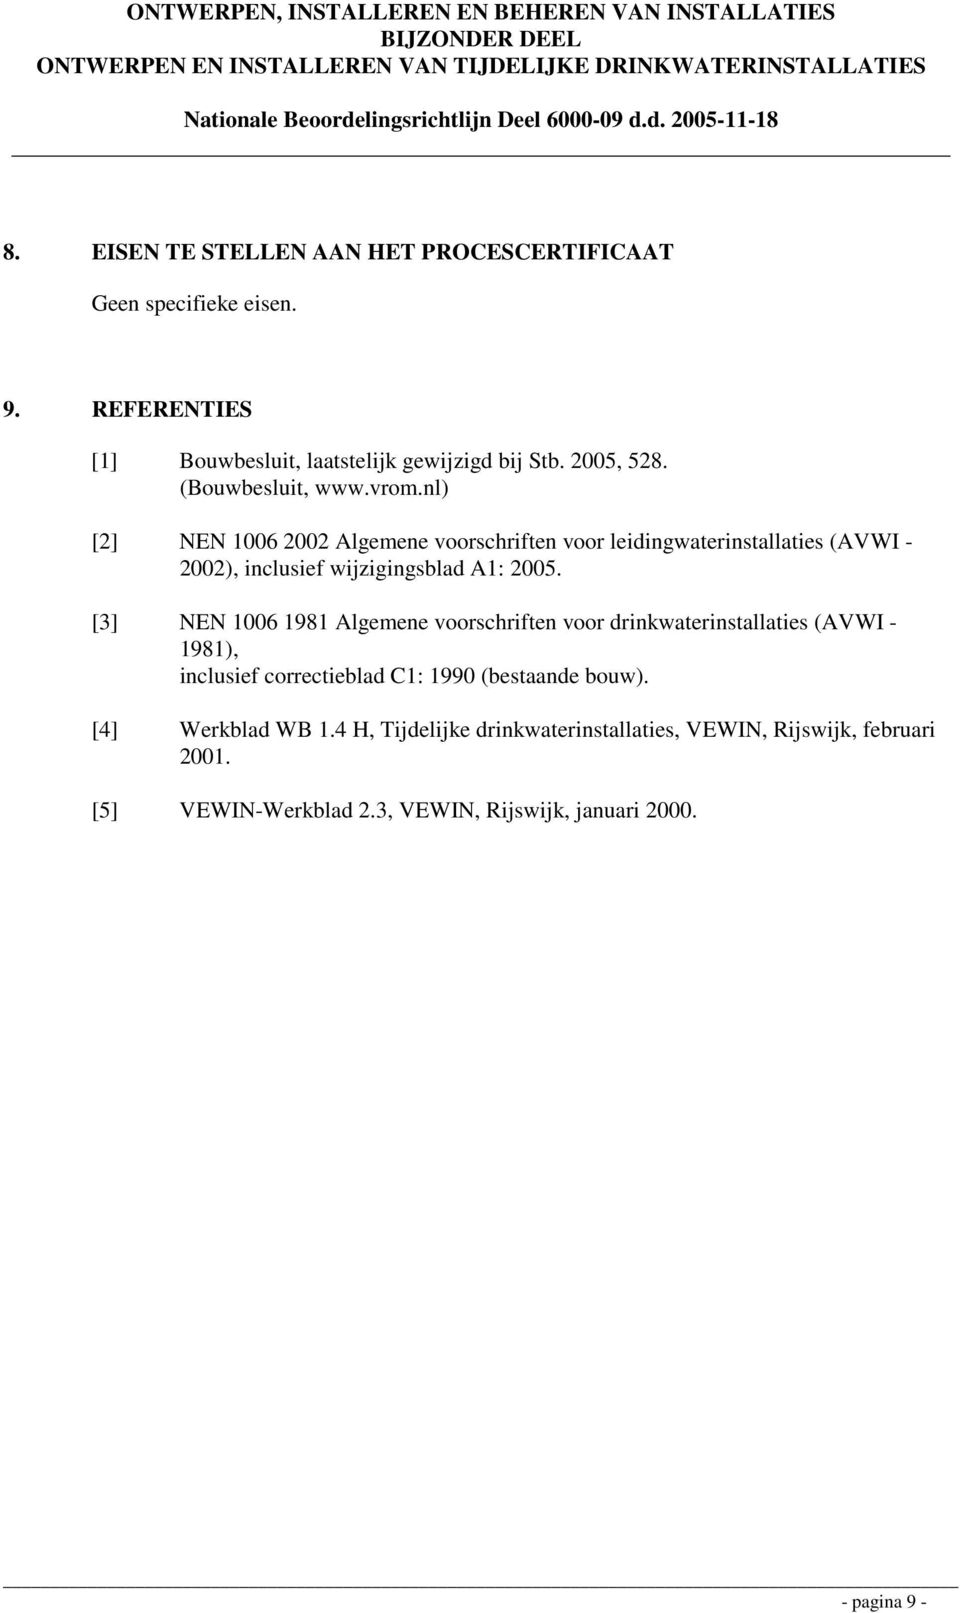 [3] NEN 1006 1981 Algemene voorschriften voor drinkwaterinstallaties (AVWI - 1981), inclusief correctieblad C1: 1990 (bestaande bouw).